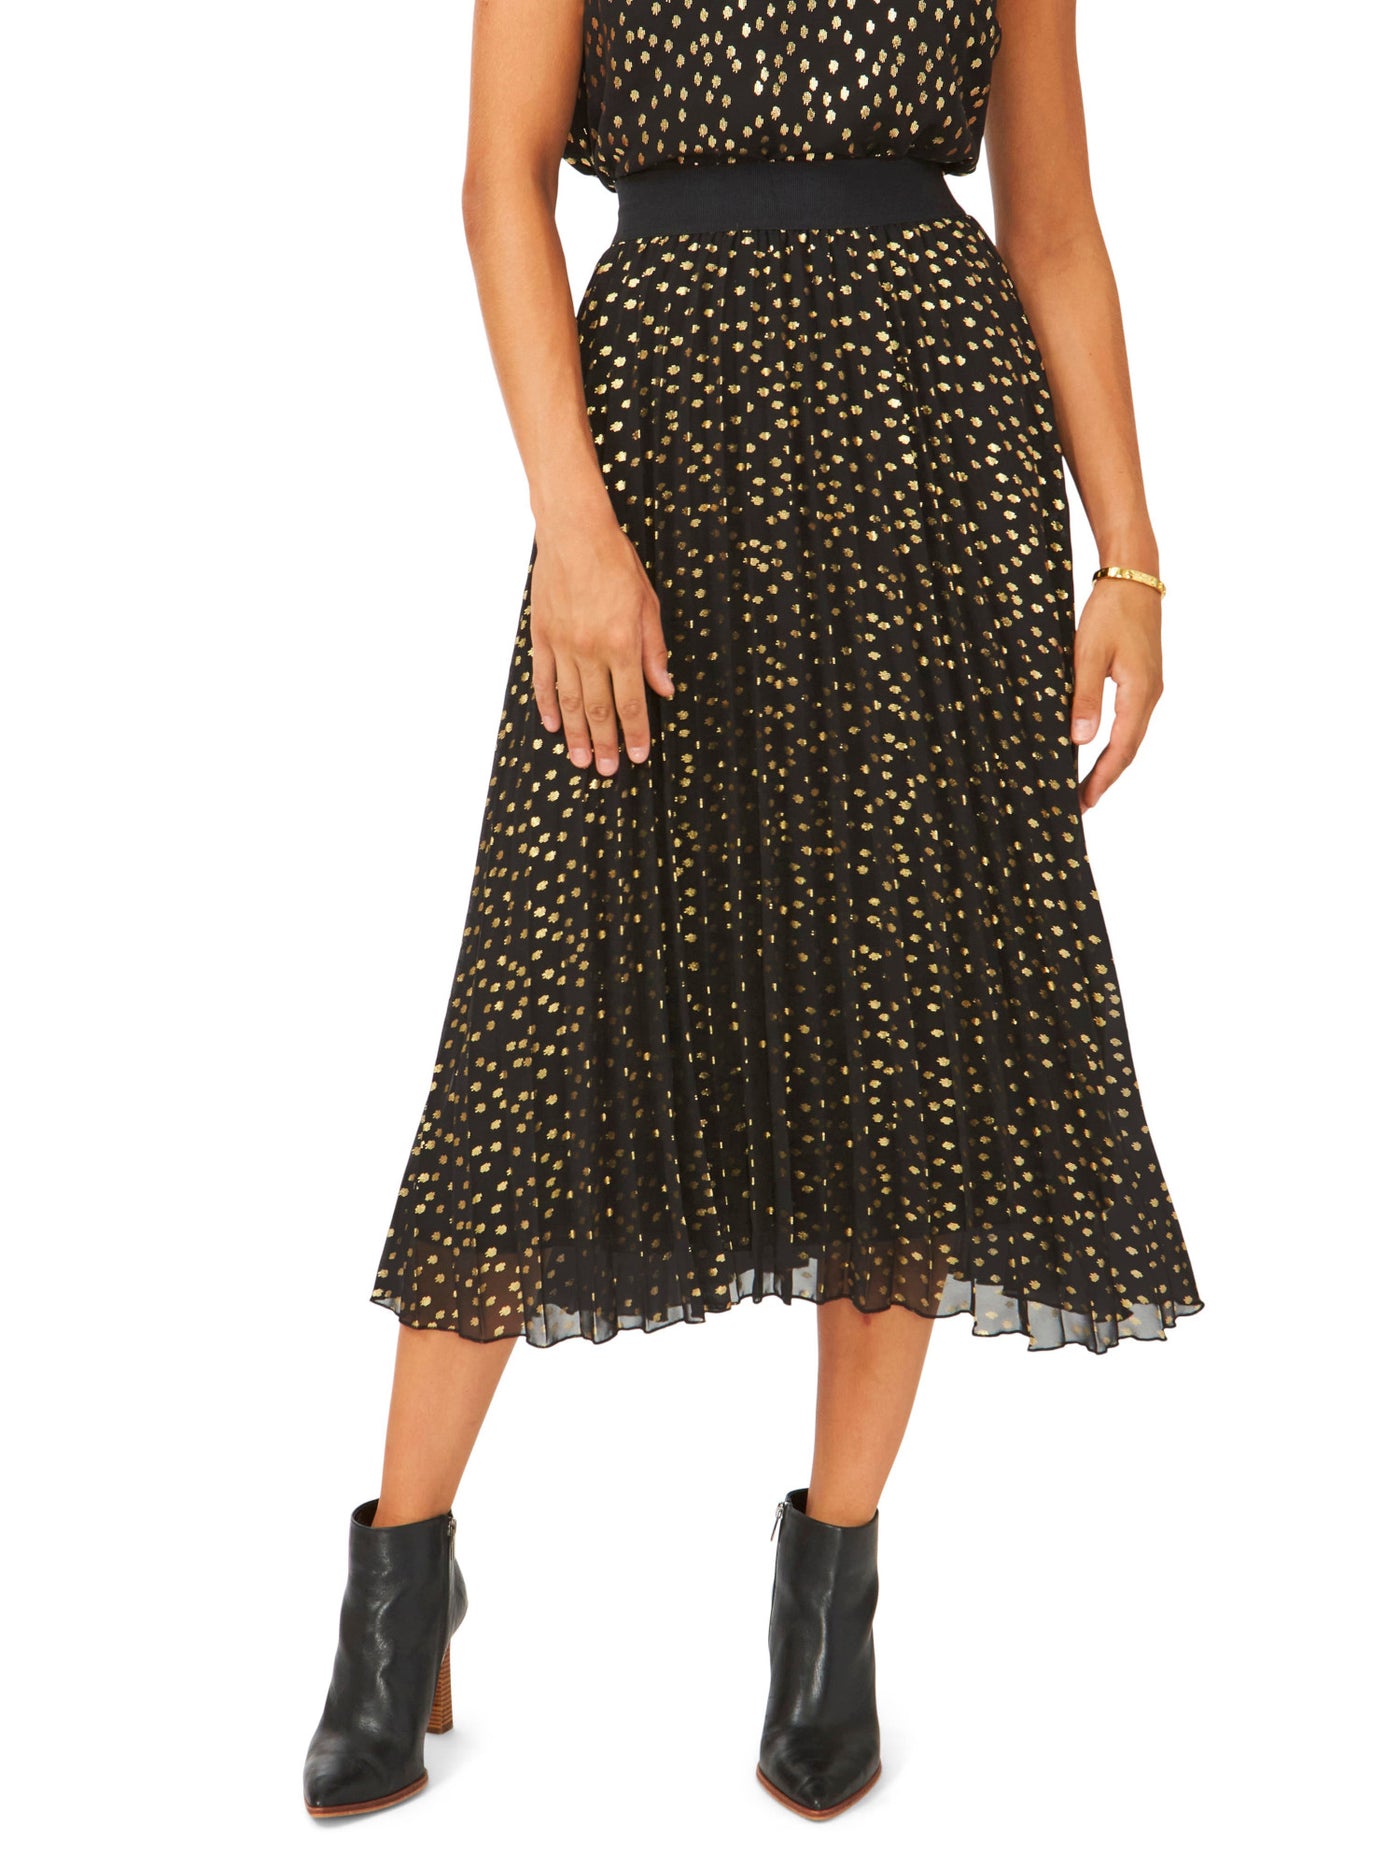 VINCE CAMUTO Womens Black Lined Elastic Waist Pull-on Printed Midi Pleated Skirt S